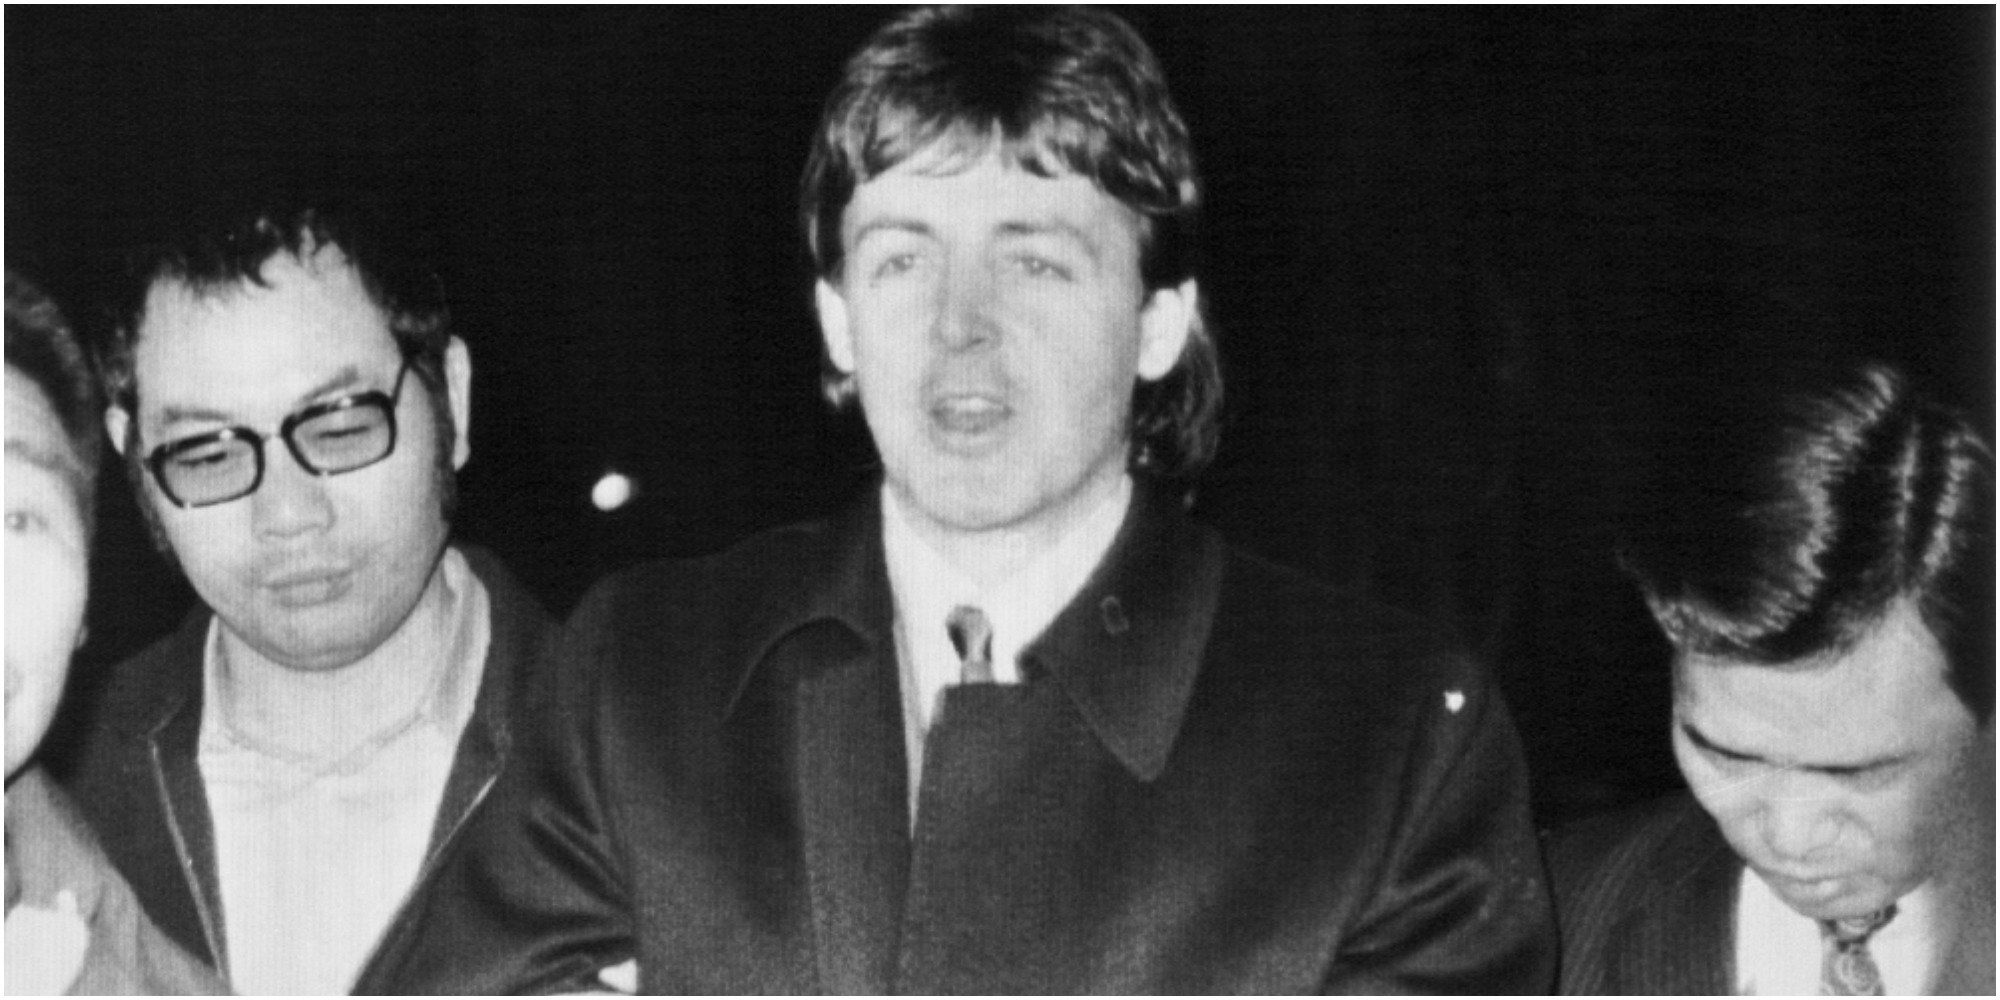 Paul McCartney arrest in 1980 in Japan.